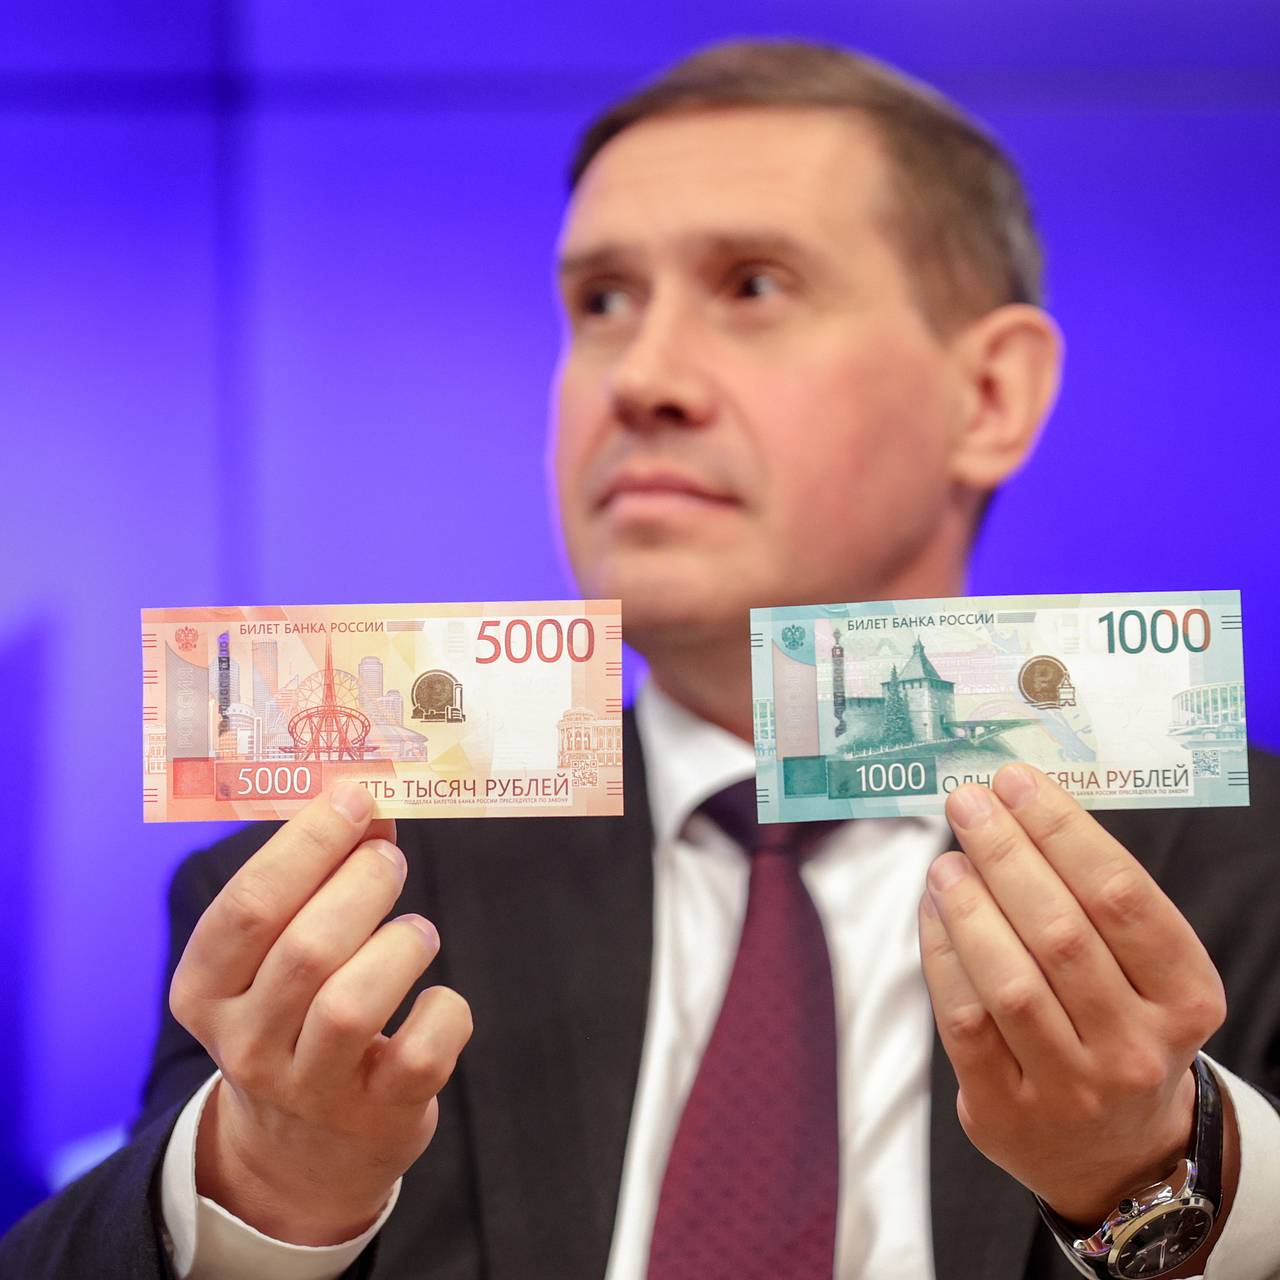 Что изображено на 5000-рублевой купюре России?